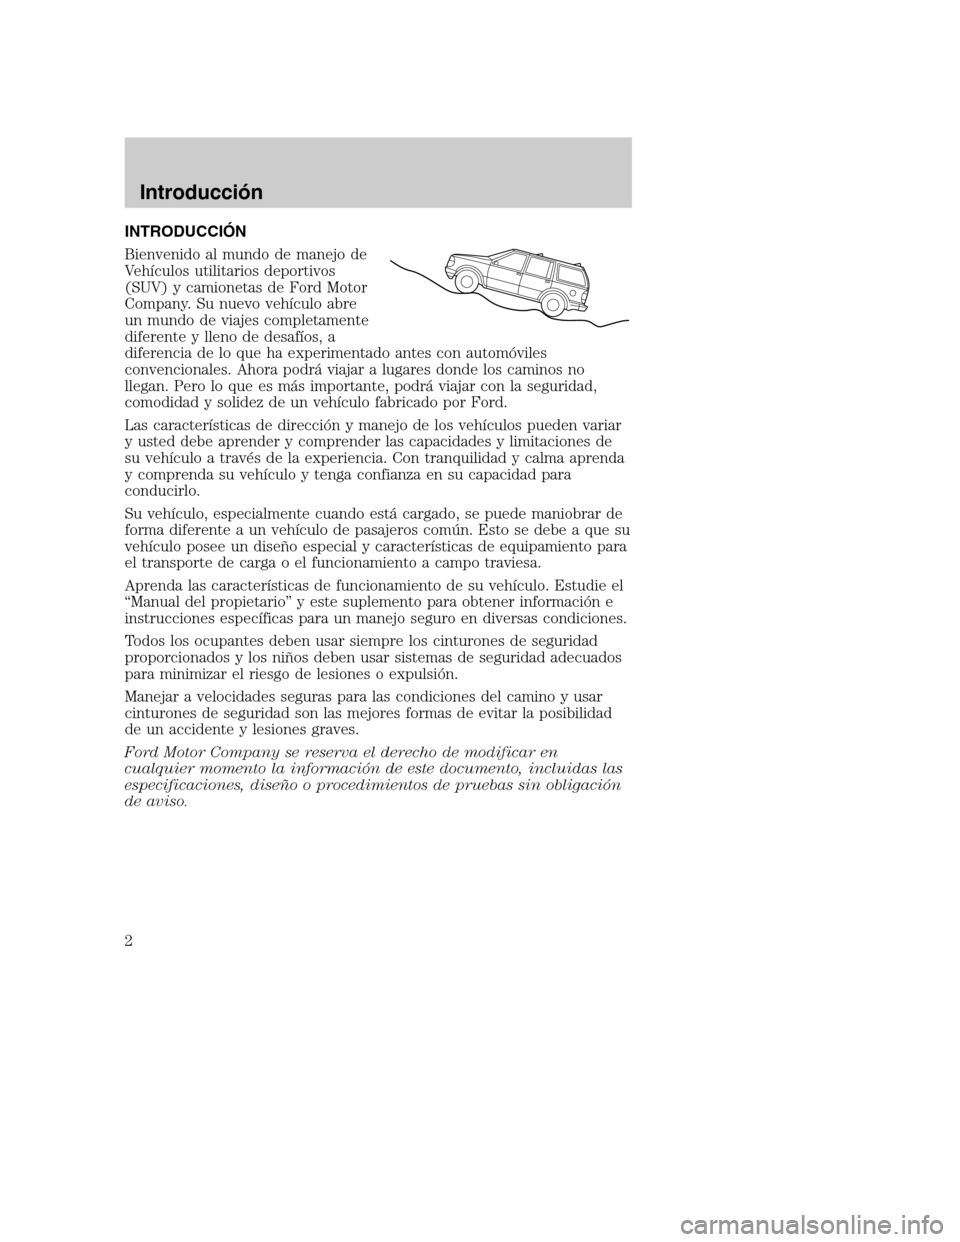 Mercury Mountaineer 2003  Manual de Usuario (in Spanish) INTRODUCCIÓN
Bienvenido al mundo de manejo de
Ve hículos utilitarios deportivos
(SUV) y camionetas de Ford Motor
Company. Su nuevo vehículo abre
un mundo de viajes completamente
diferente y lleno d